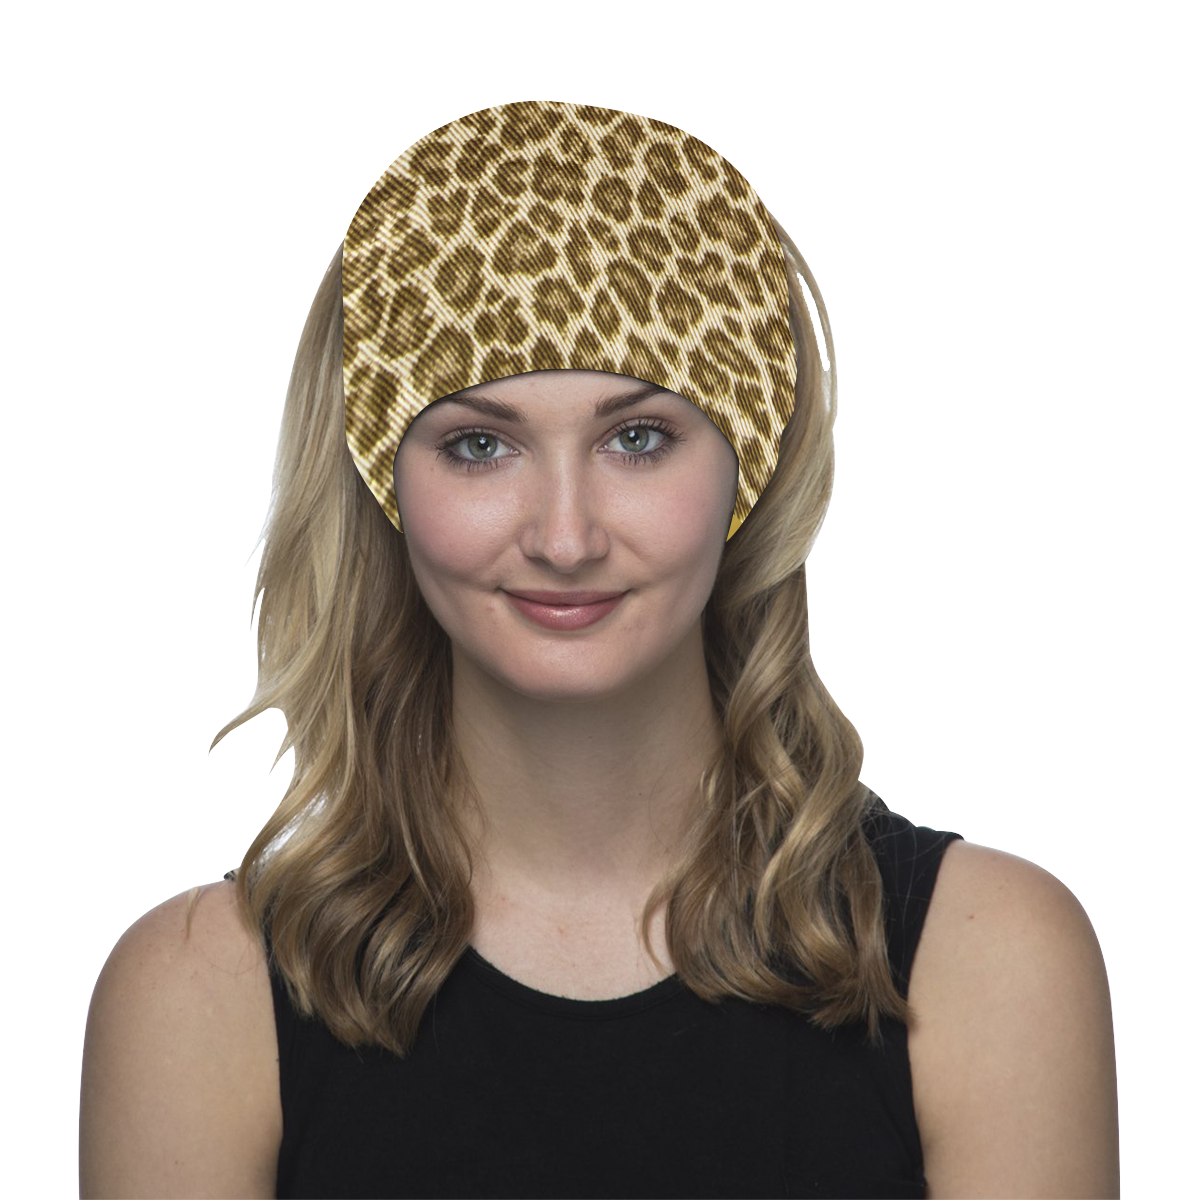 Leopard Fabric Animal Pattern Multifunctional Headwear